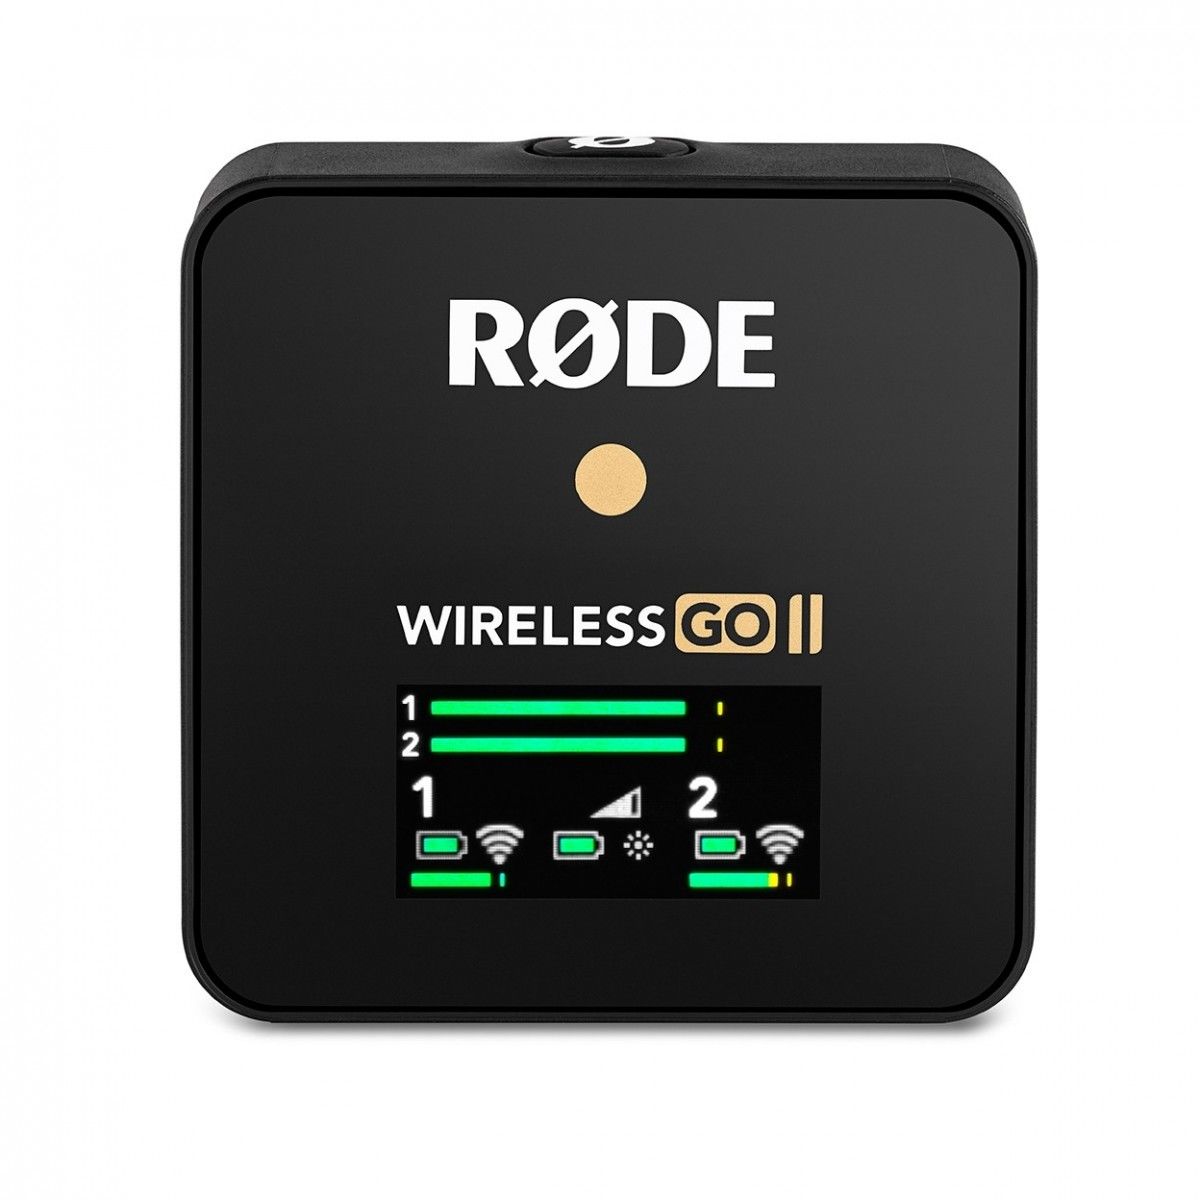  RODE Wireless GO II